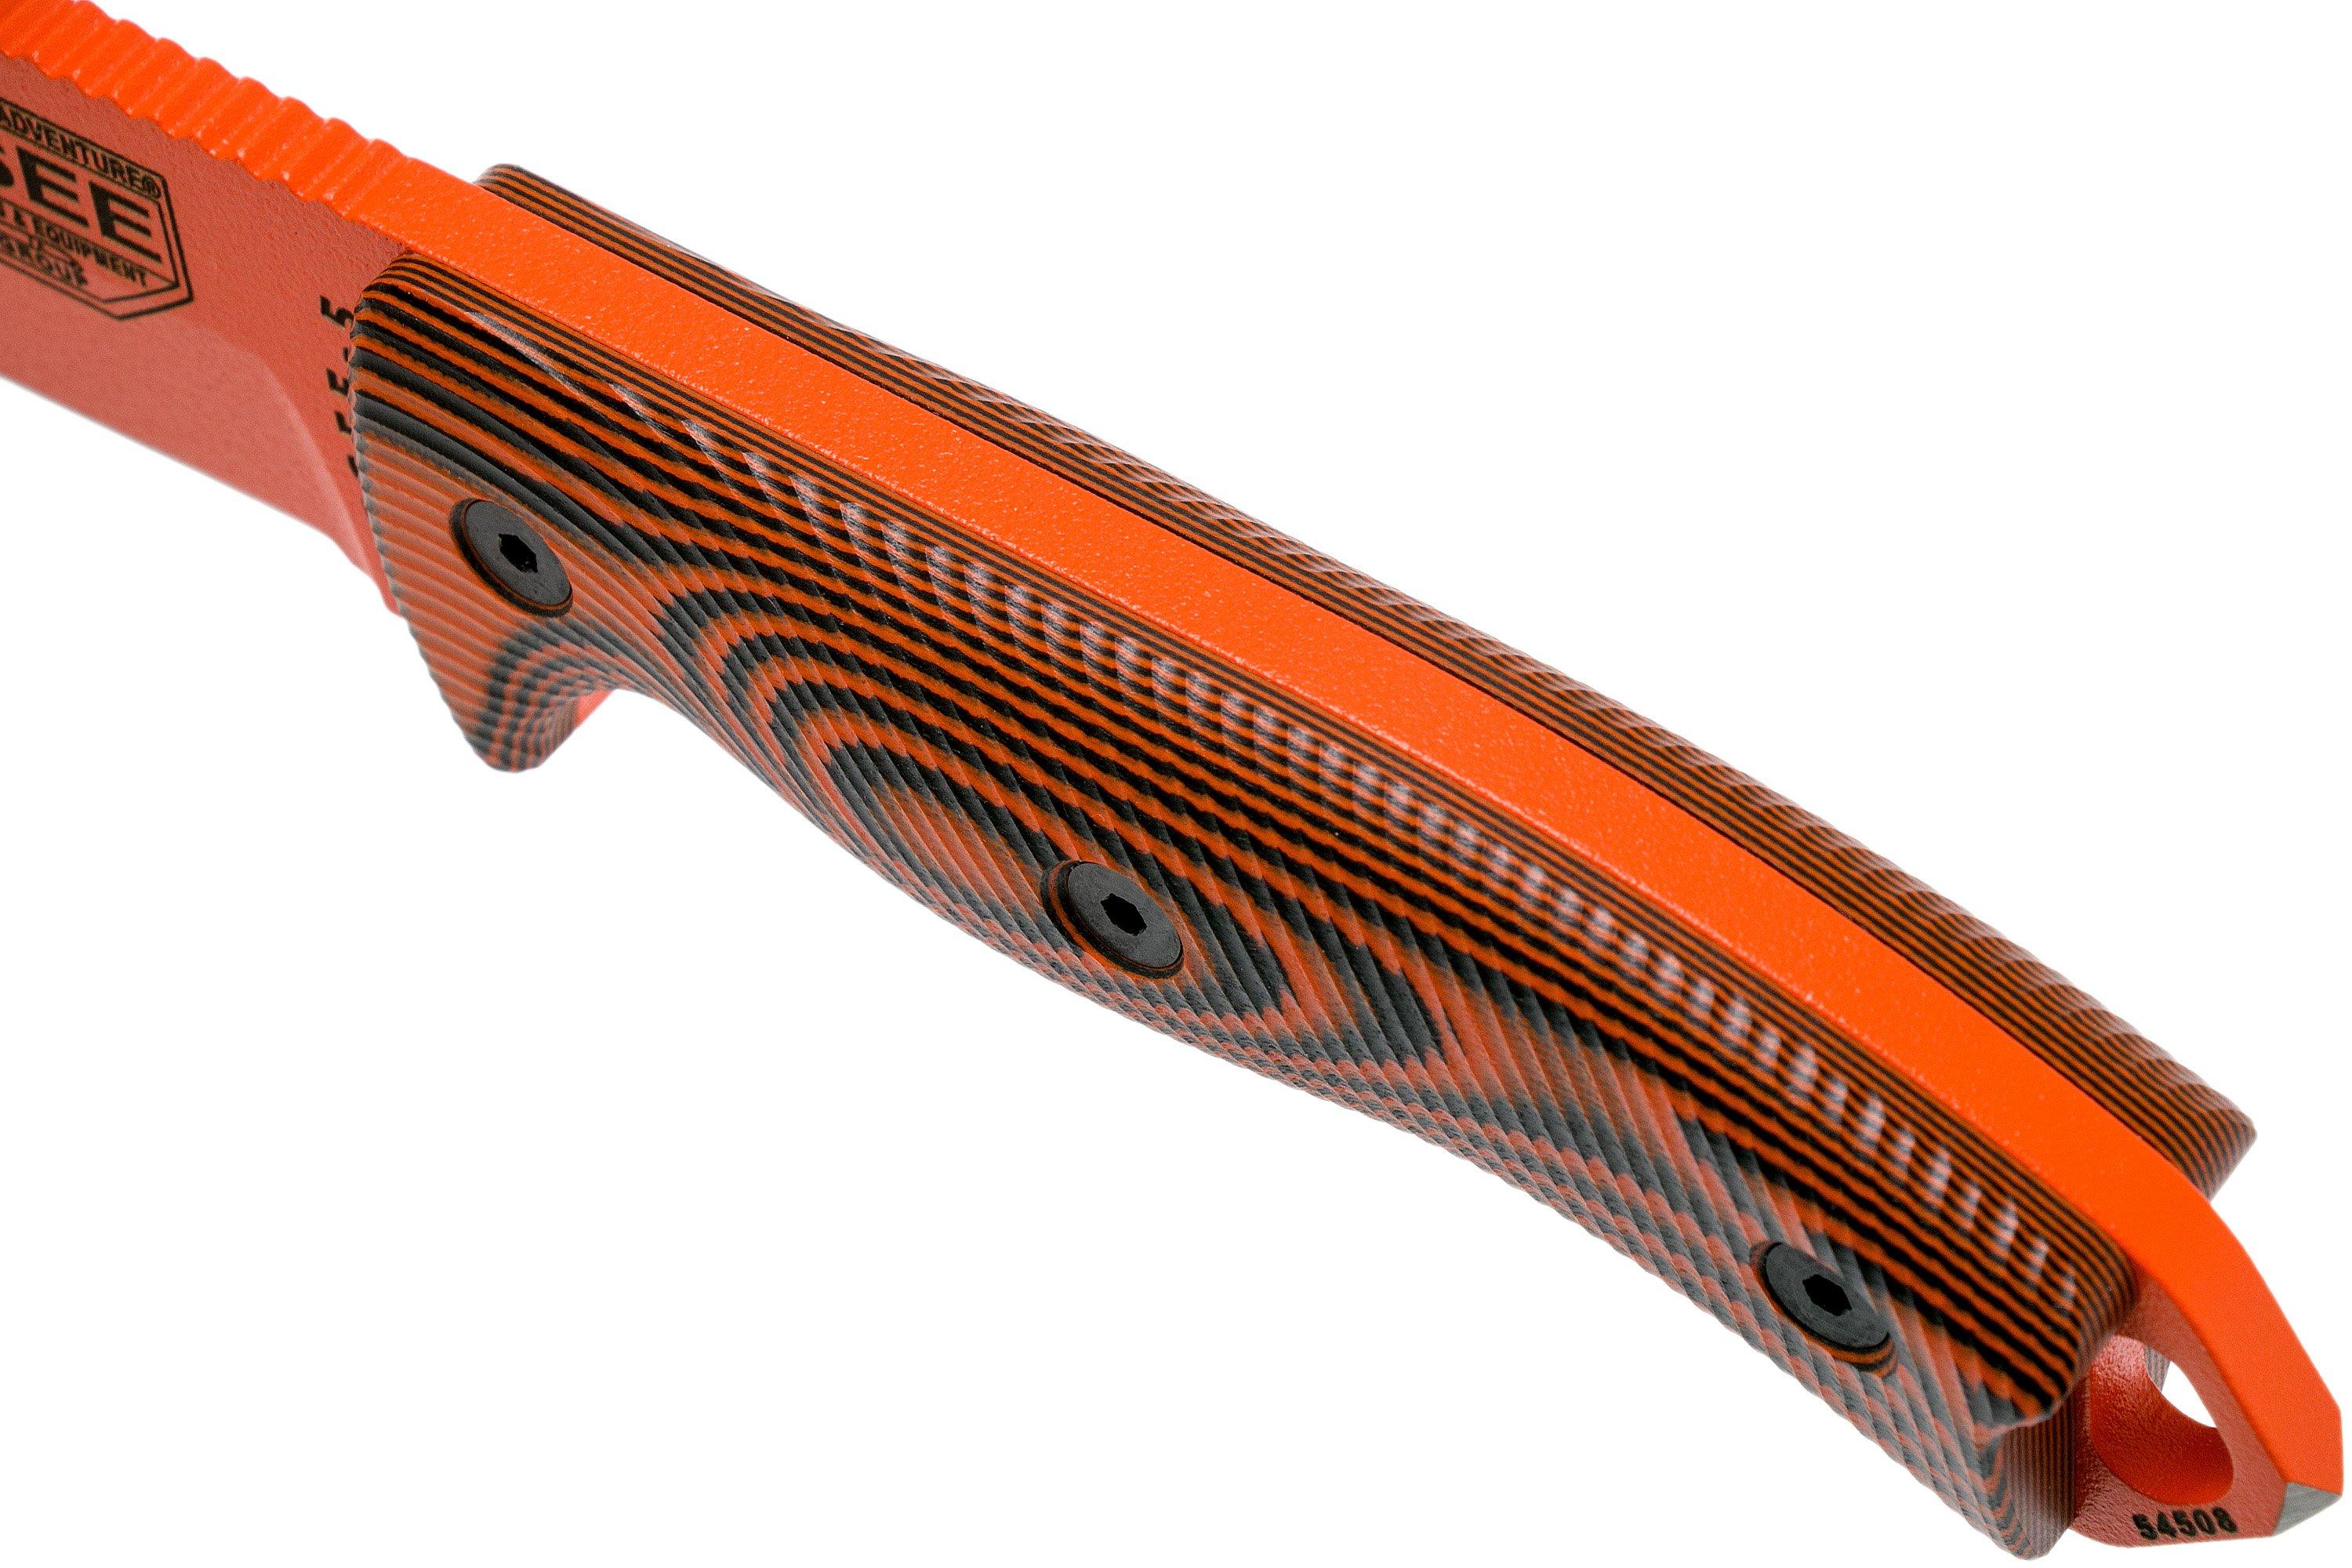 ESEE Knives 5 - 5POR-006 - 1095 Carbon Steel Orange Blade - Orange